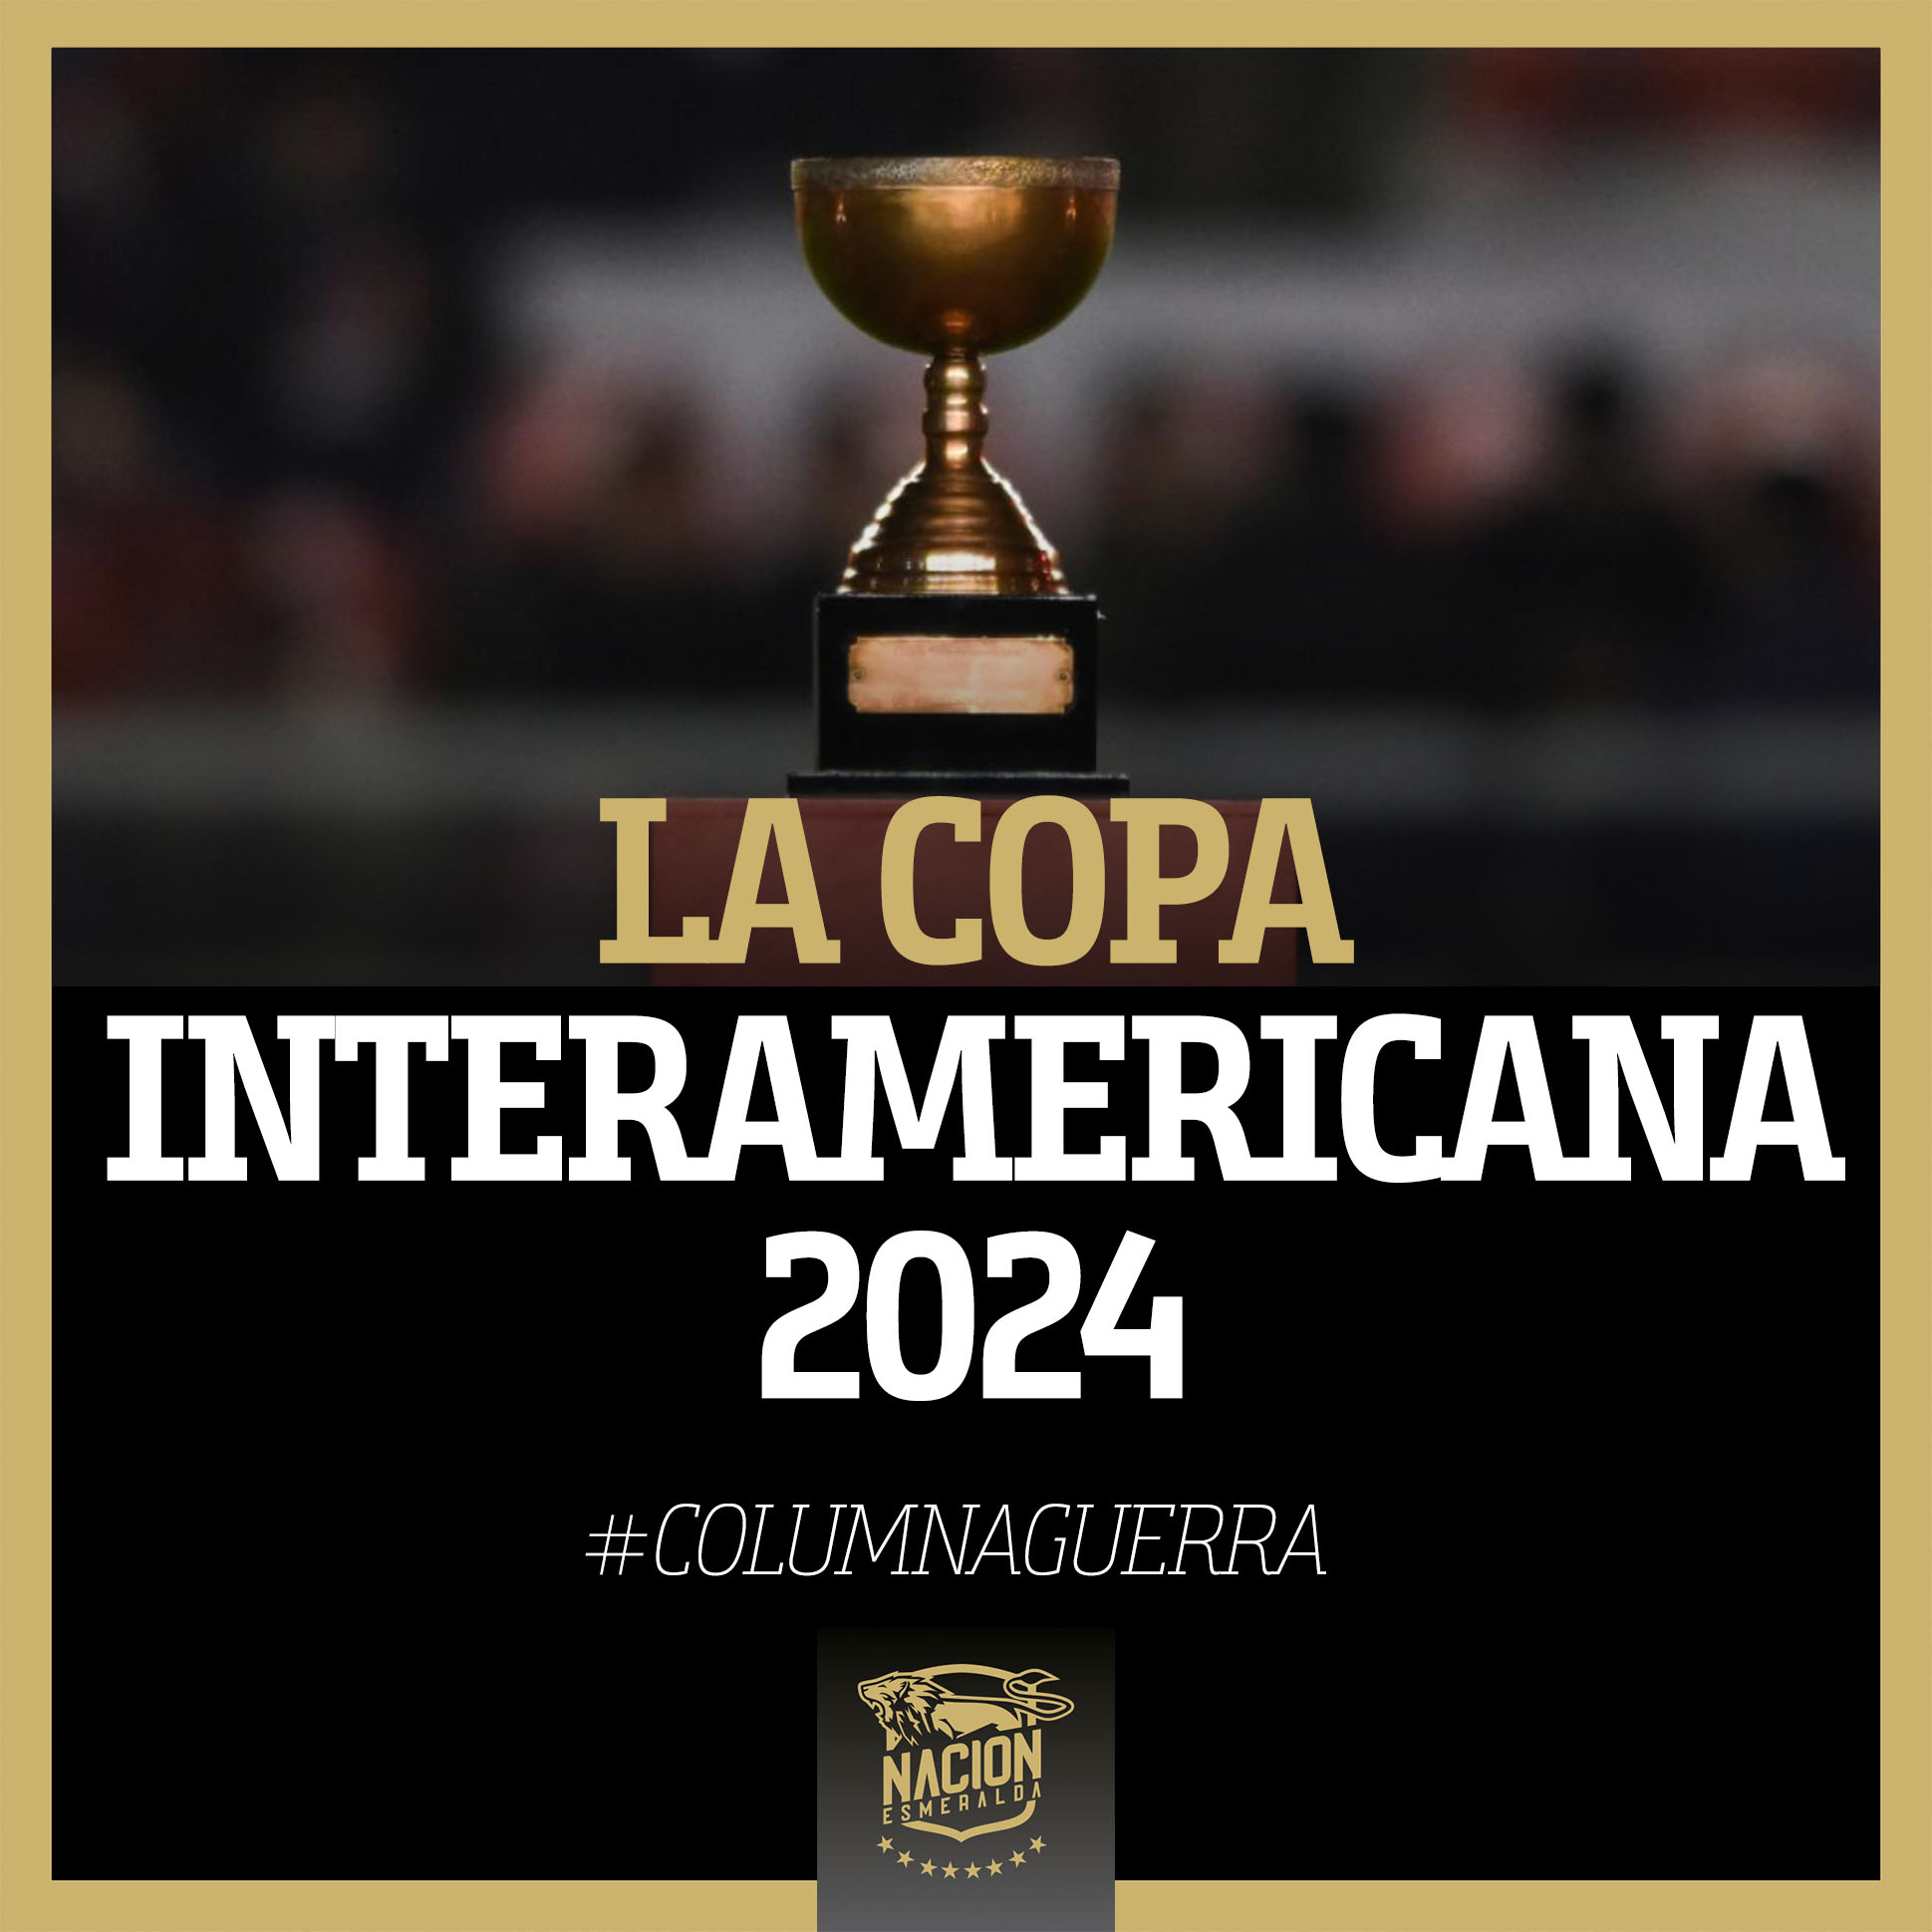 La Copa Interamericana 2024 Nación Esmeralda